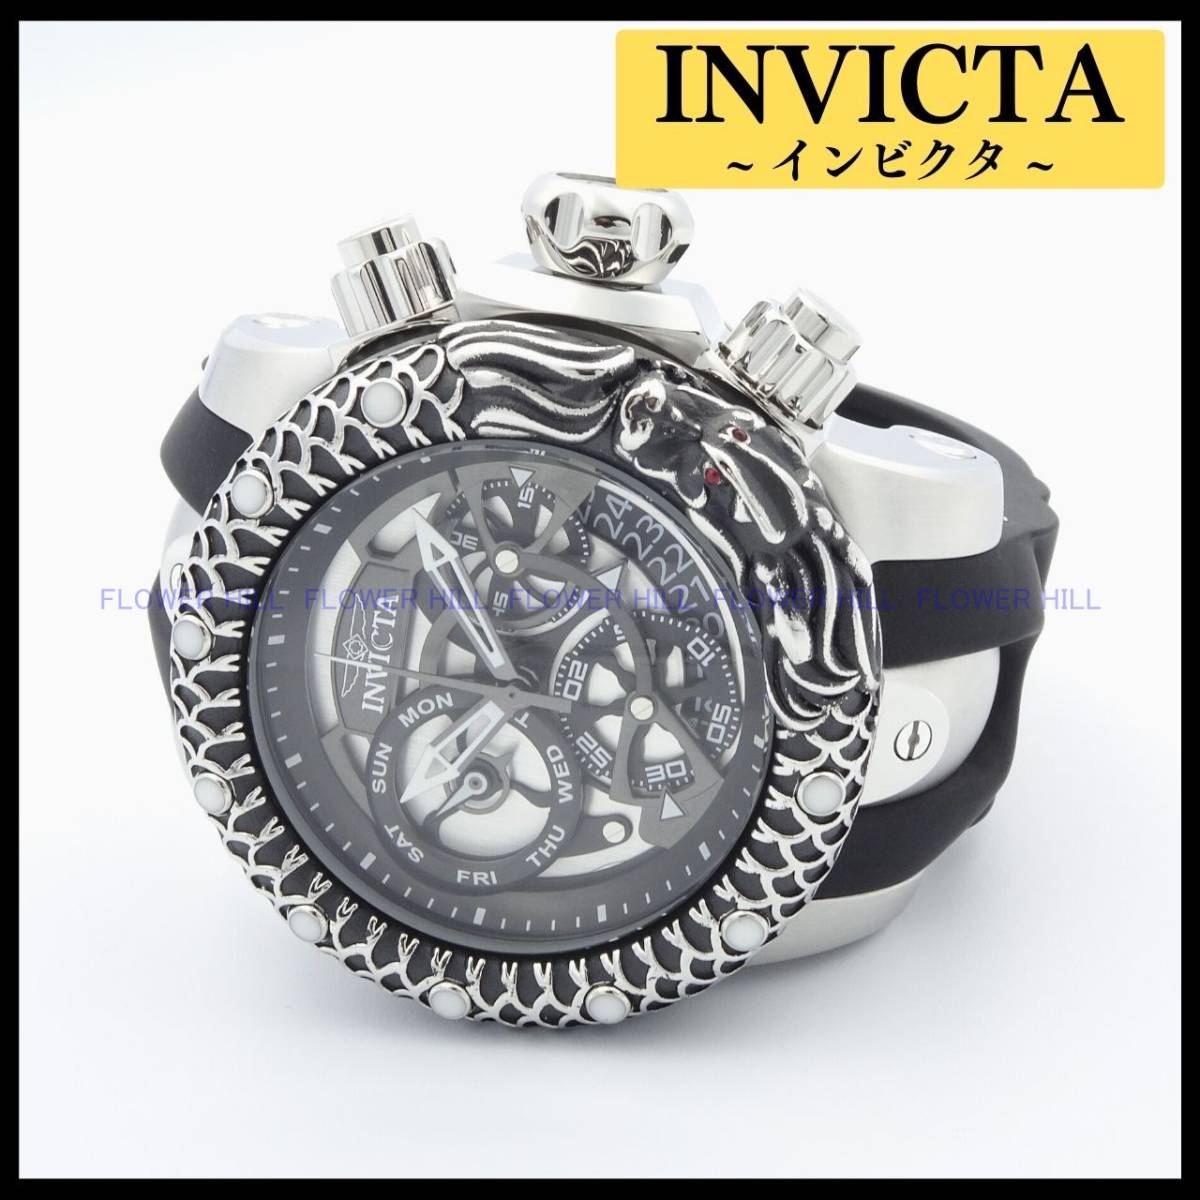 【新品・送料無料】インビクタ INVICTA 腕時計 メンズ ベノム VENOM 32780 クォーツ スイスムーブメント クロノグラフ シリコンバンド